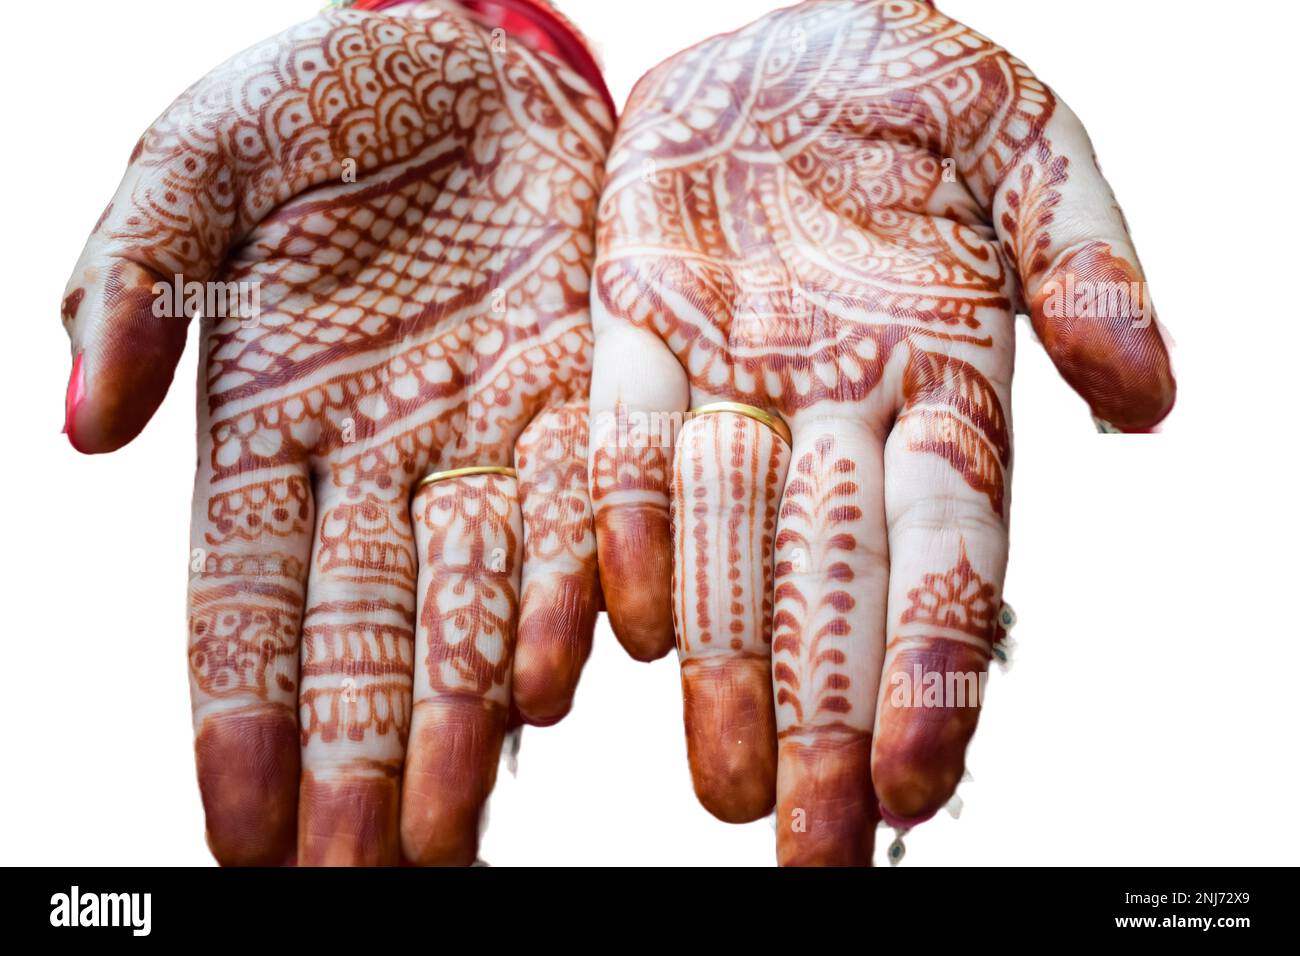 Bella donna vestita come tradizione indiana con hennè mehndi design su entrambe le mani per celebrare il grande festival di Karwa Chahuth con bianco semplice b Foto Stock